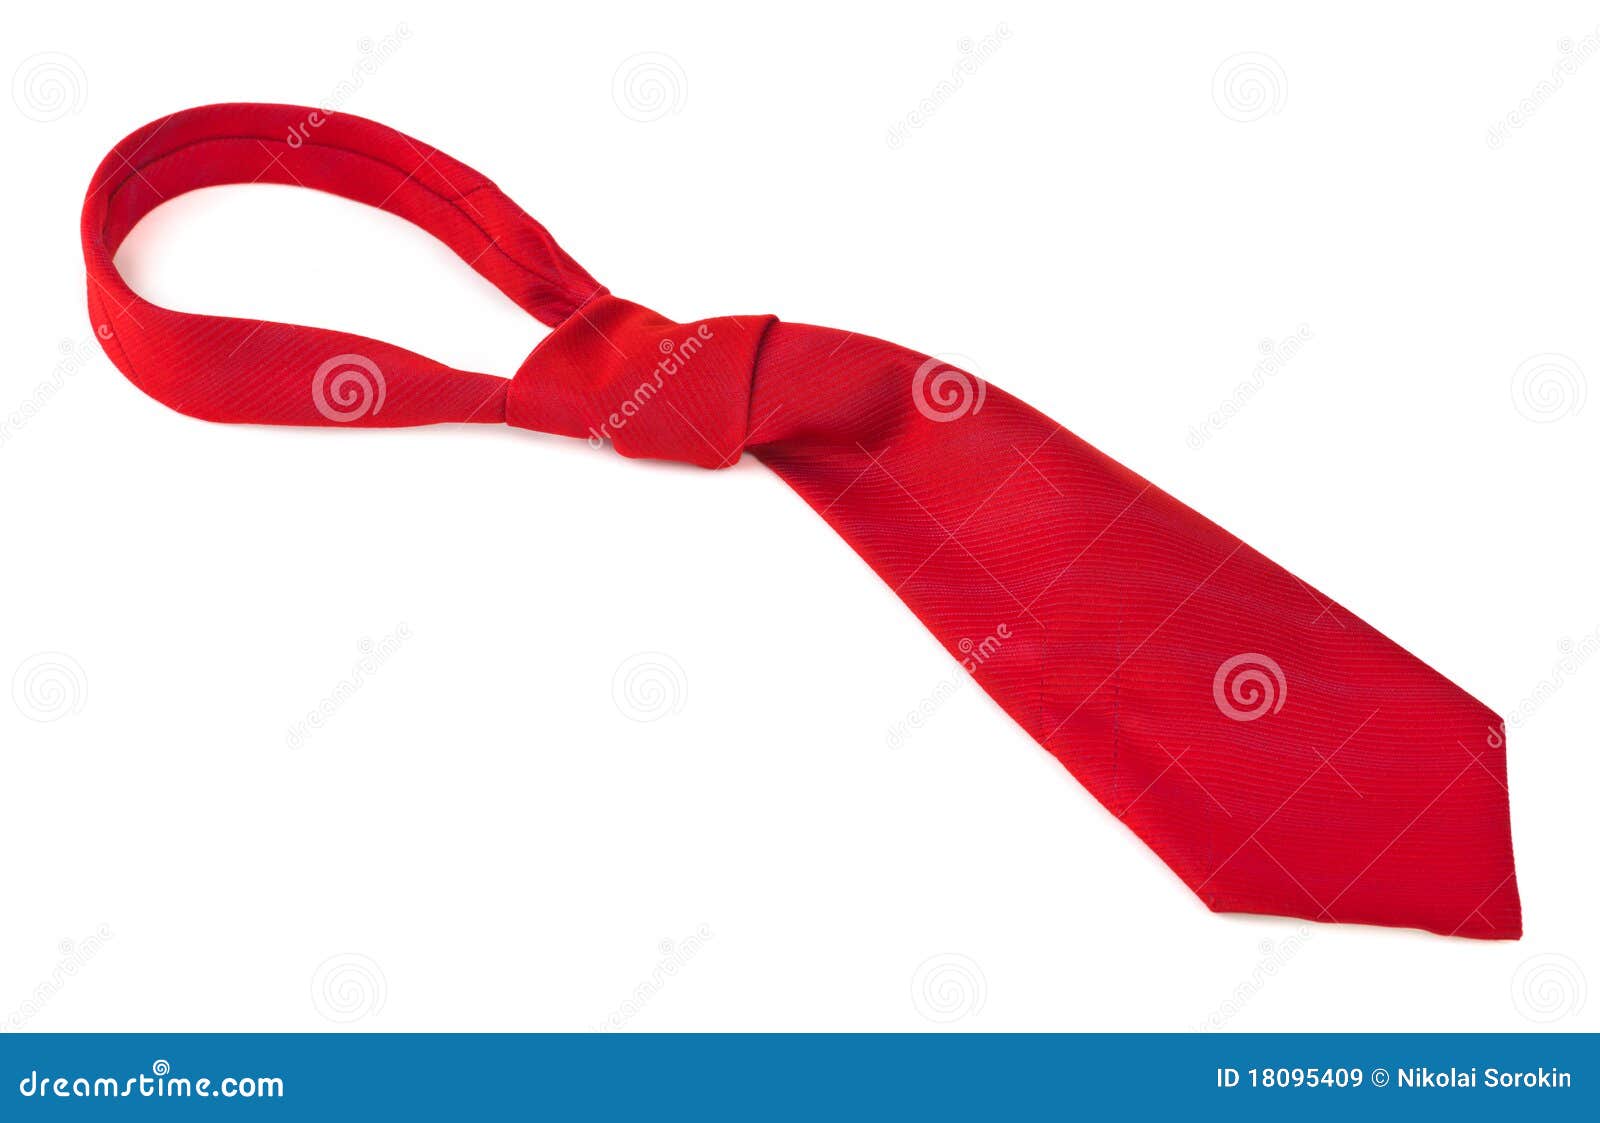 Ilustración de cinta roja, cinta de lazo rojo, corbata, partido